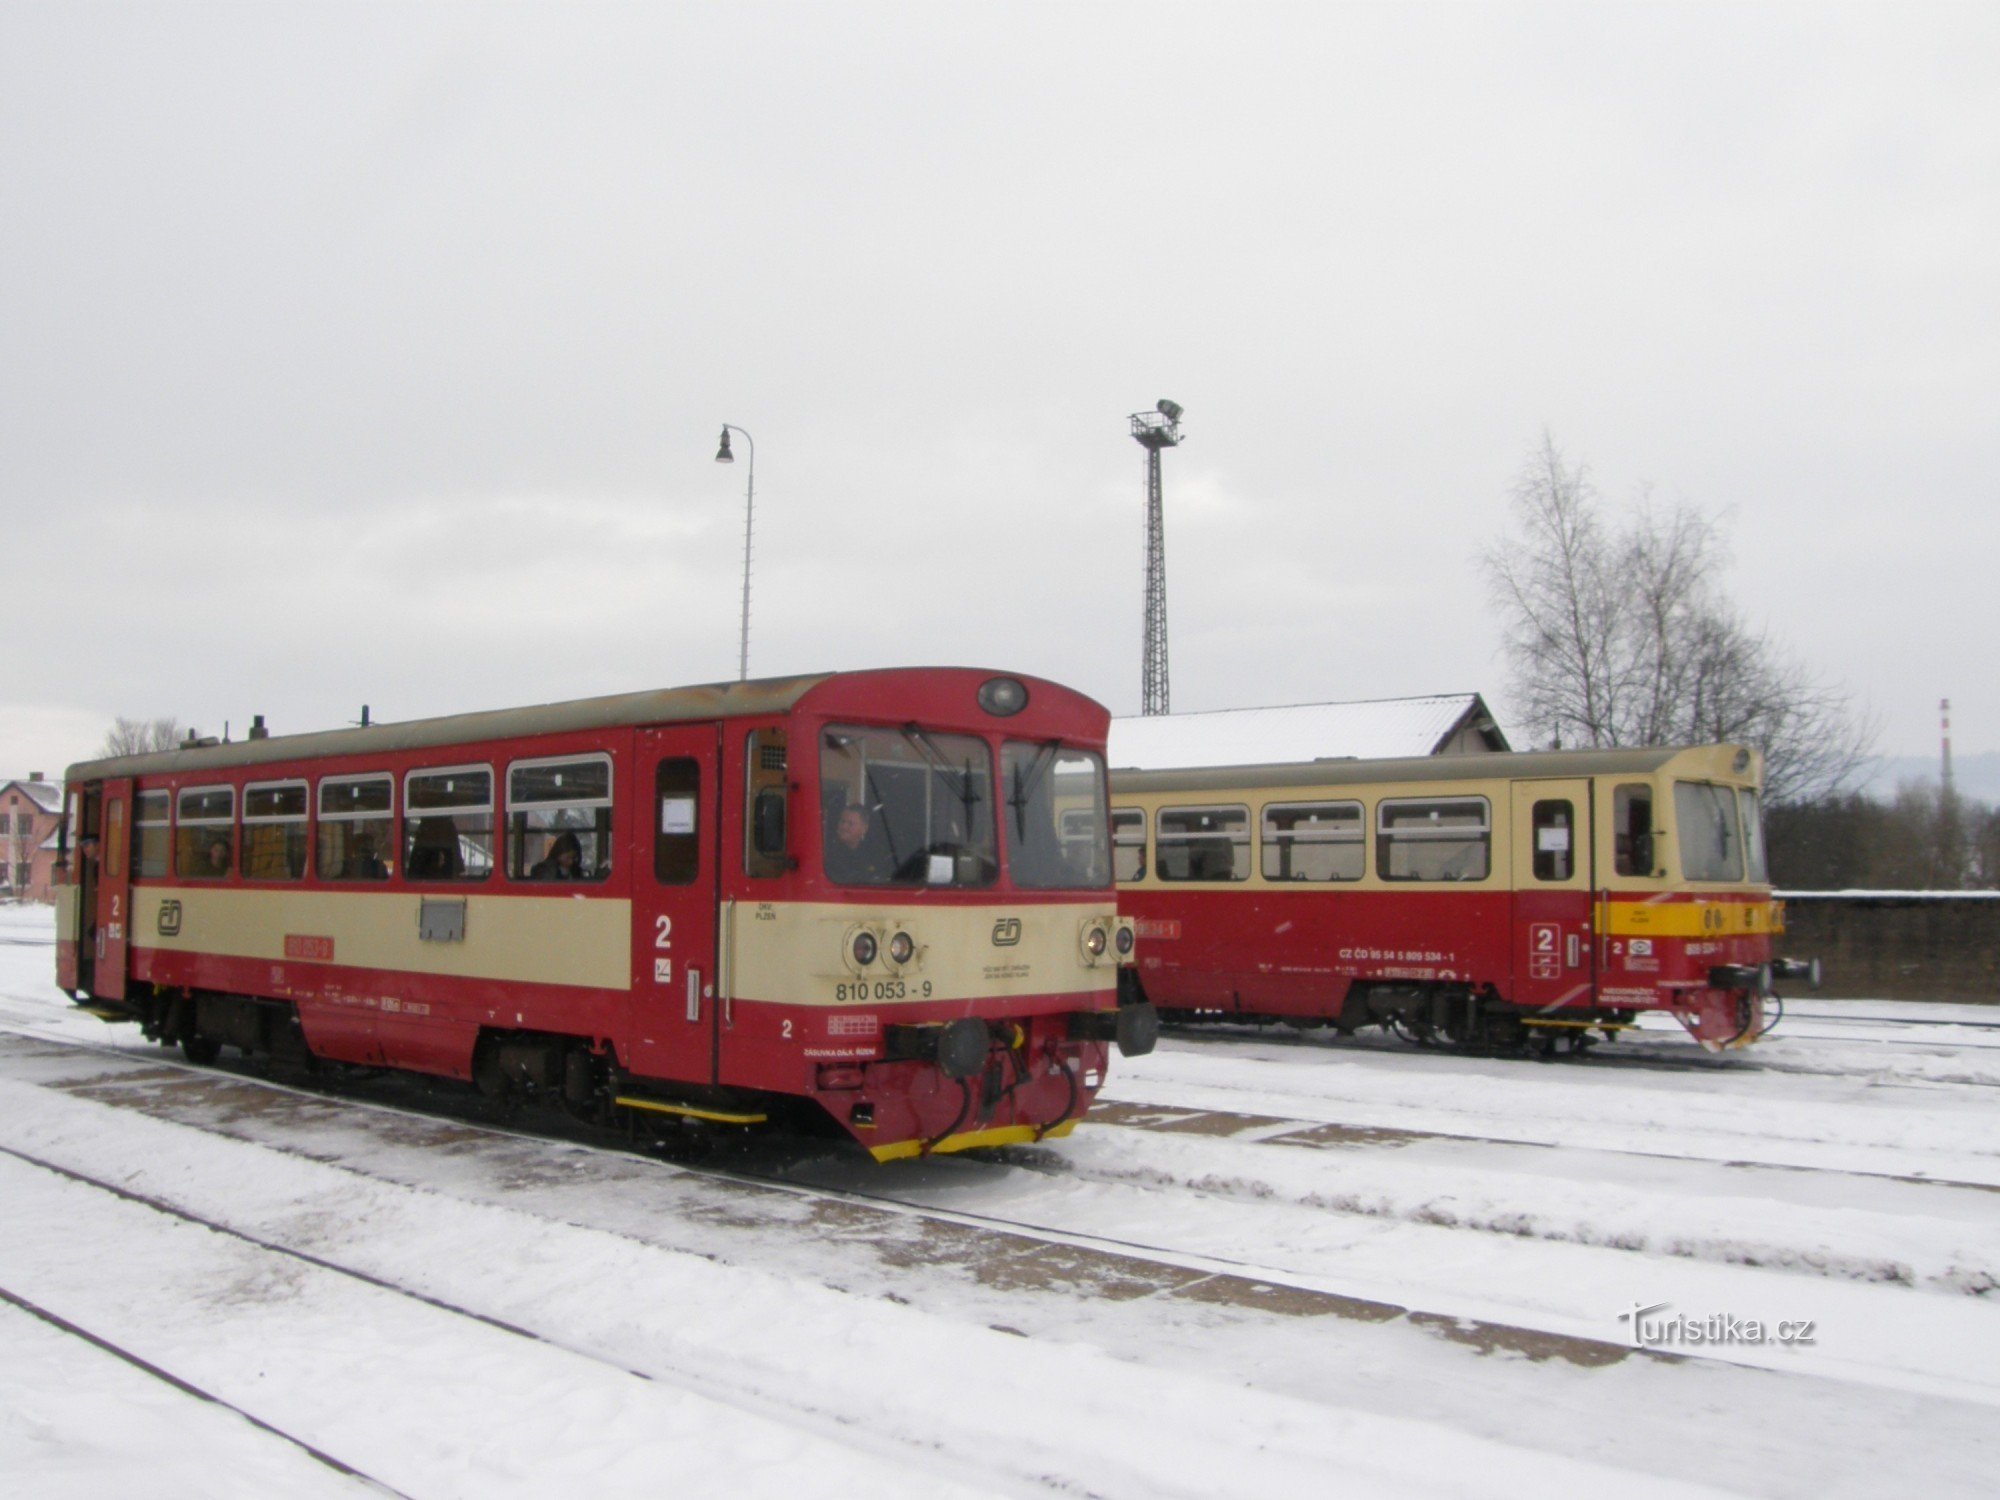 Поезда также отправляются из Волара в направлении Черного Кржижа.